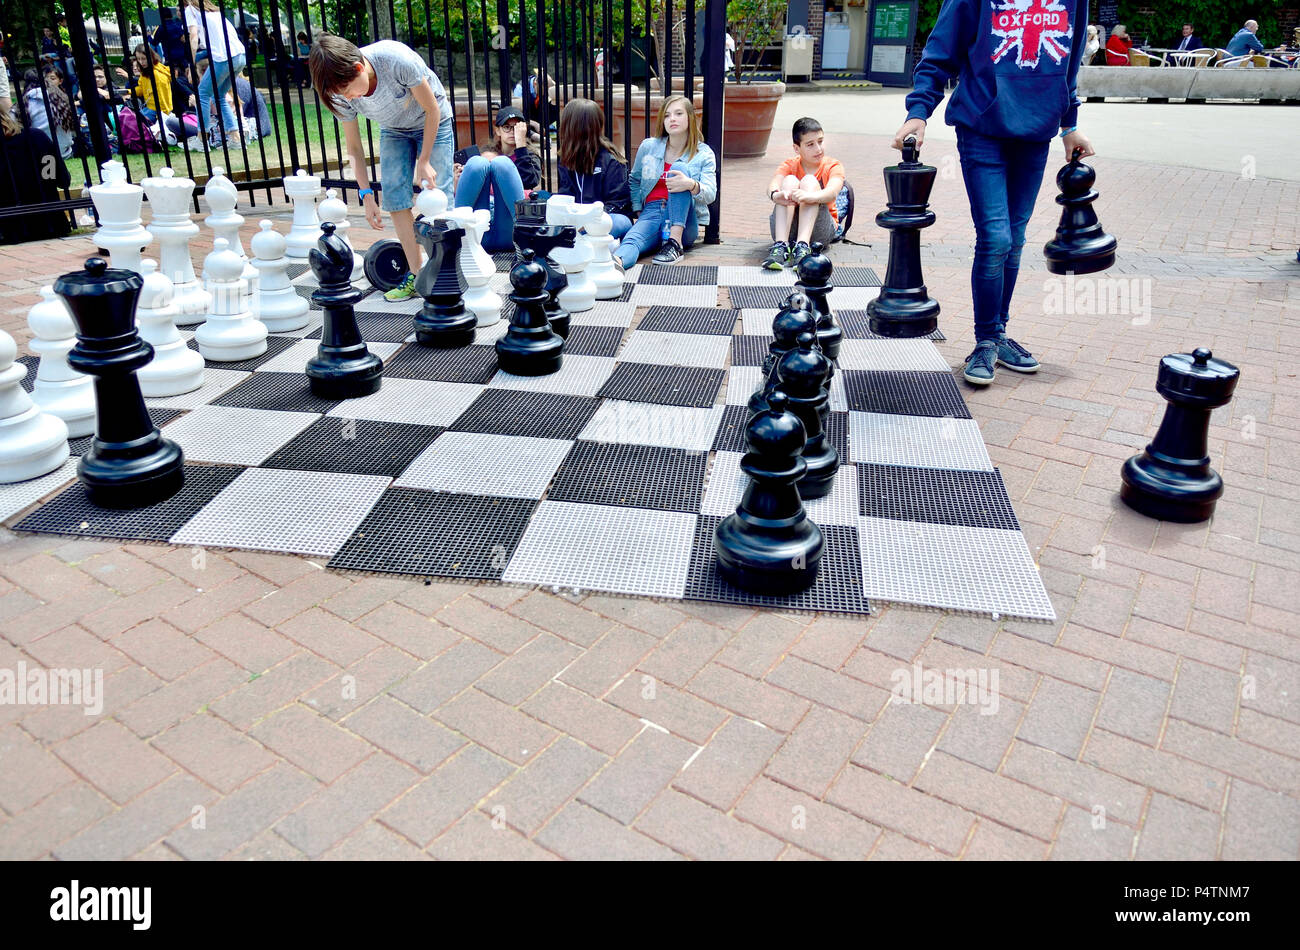 Enfants jouant aux échecs en plein air géant à Victoria Embankment Gardens, London, England, UK. Banque D'Images